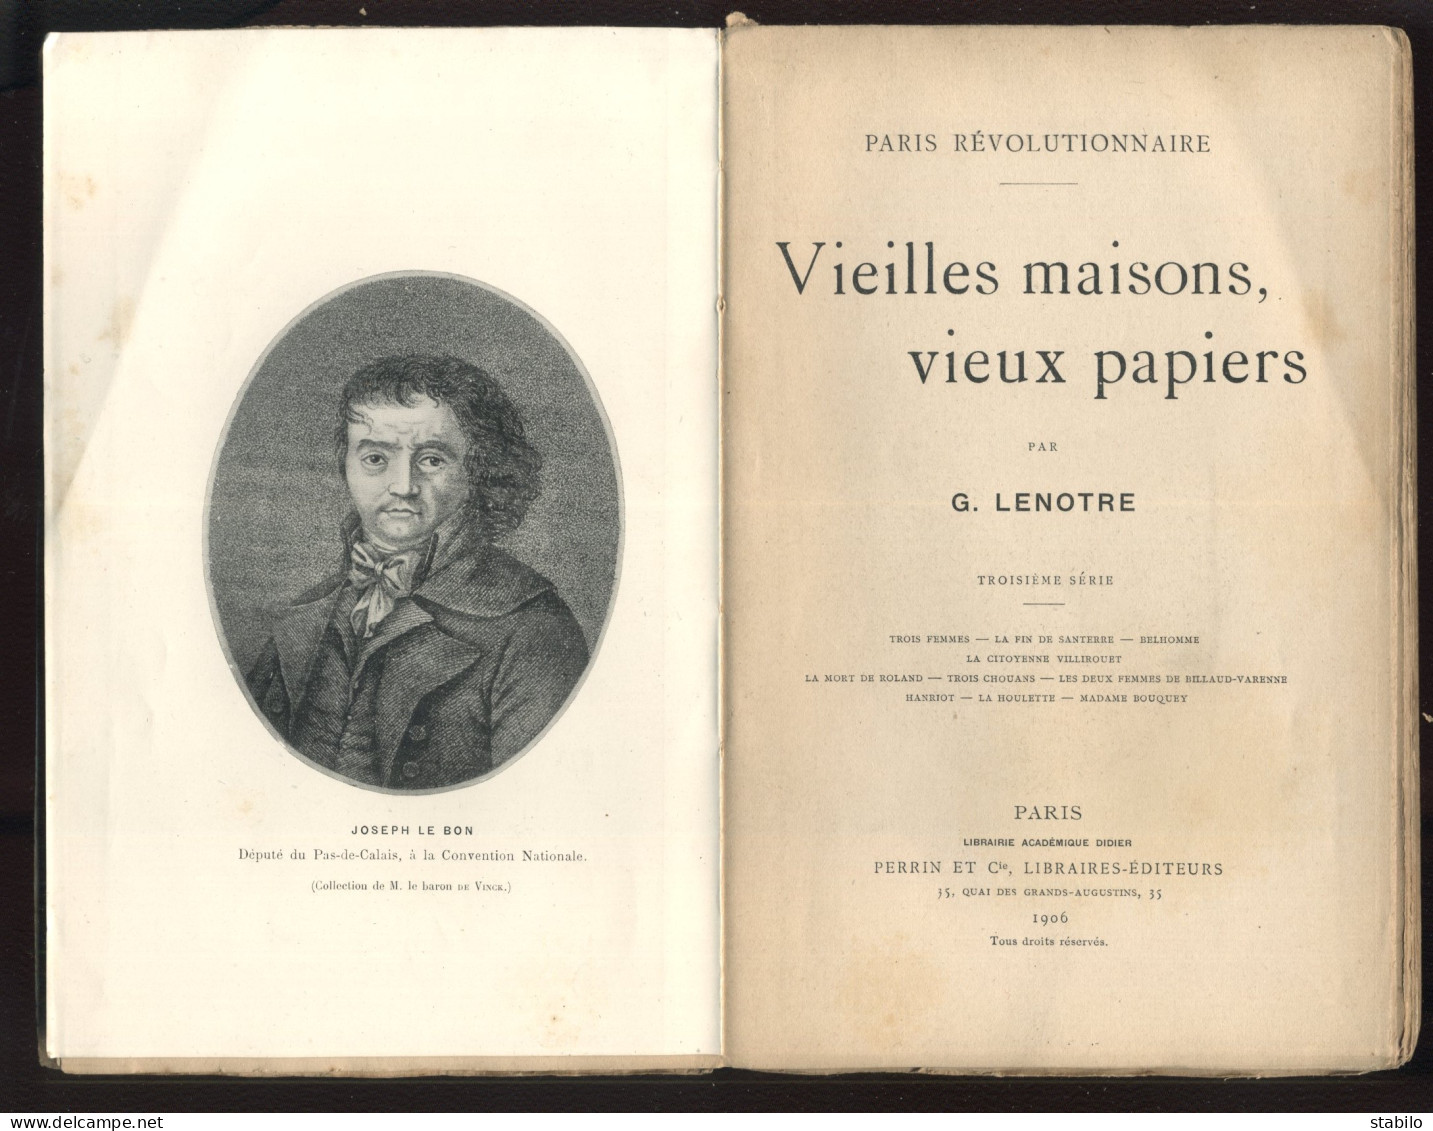 PARIS REVOLUTIONNAIRE - VIEILLES MAISONS, VIEUX PAPIERS PAR G. LENOTRE - EDITEUR PERRIN 3EME SERIE 1906 - Parigi